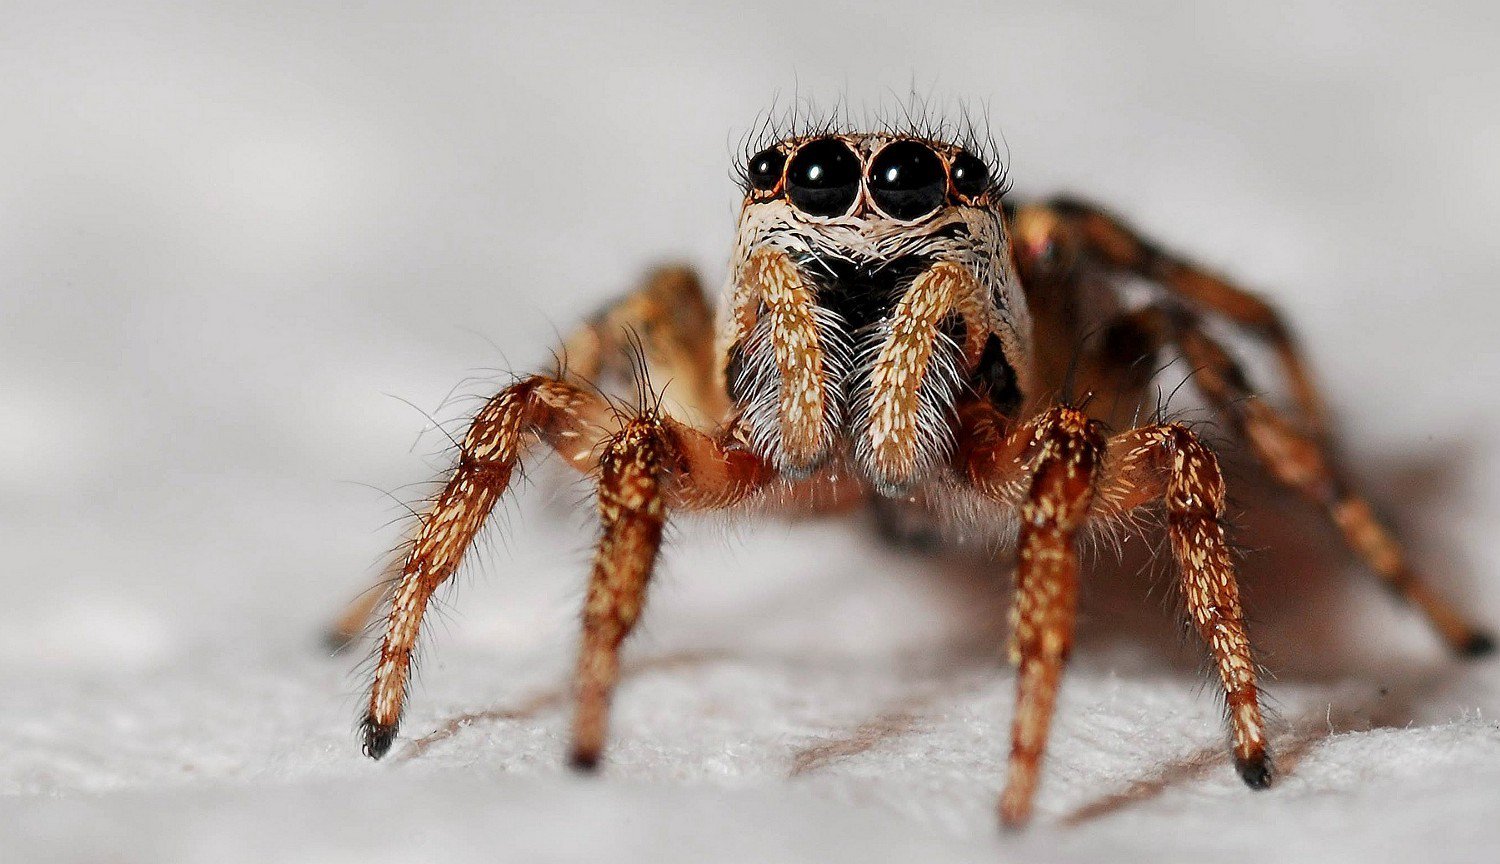 Forstenede spider ved, hvordan til at Skinne i øjnene, selv efter millioner af år